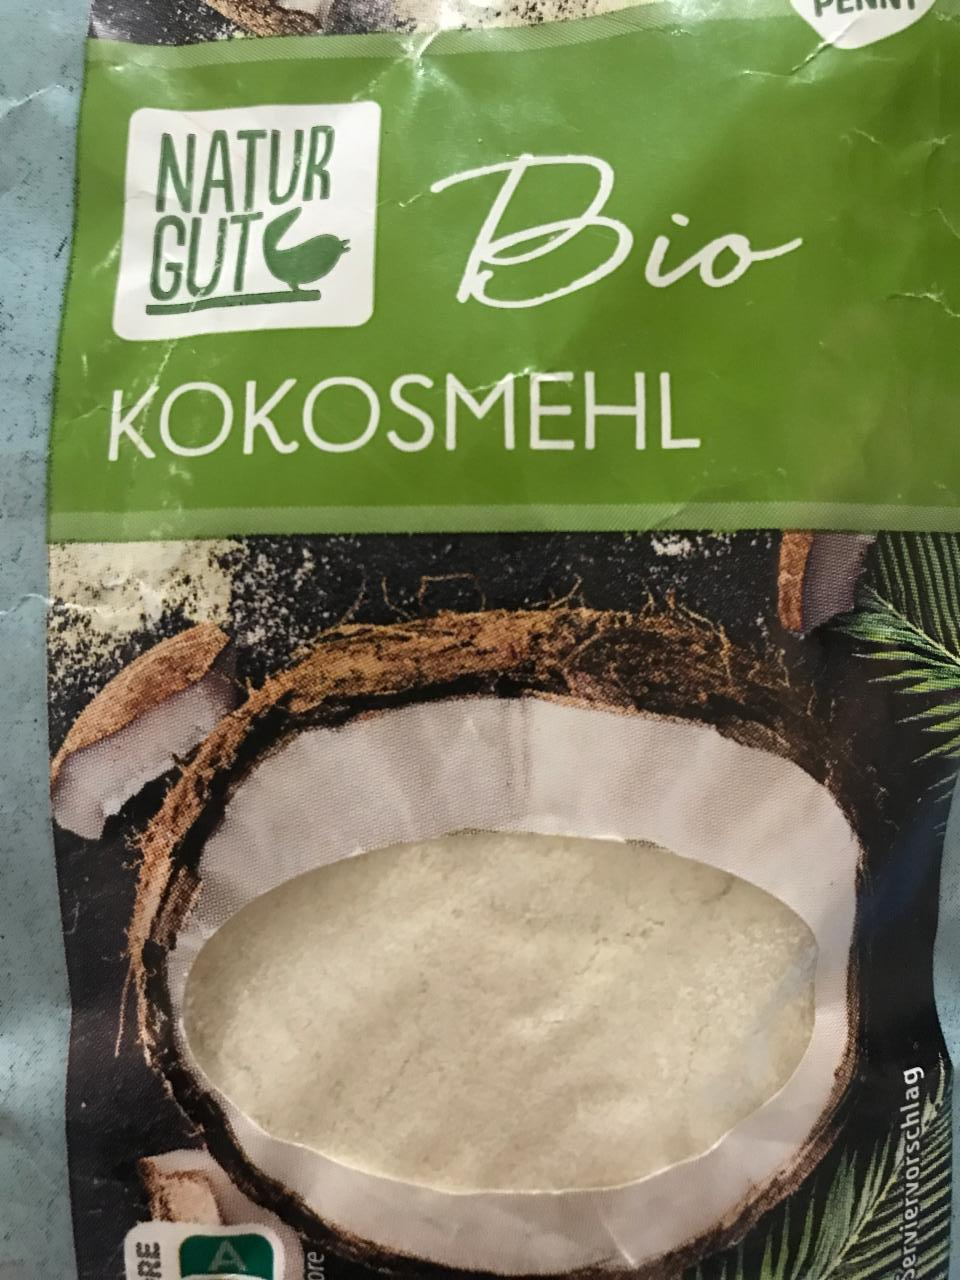 Фото - Мука кокосовая Bio Kokosmehi Natur Gut